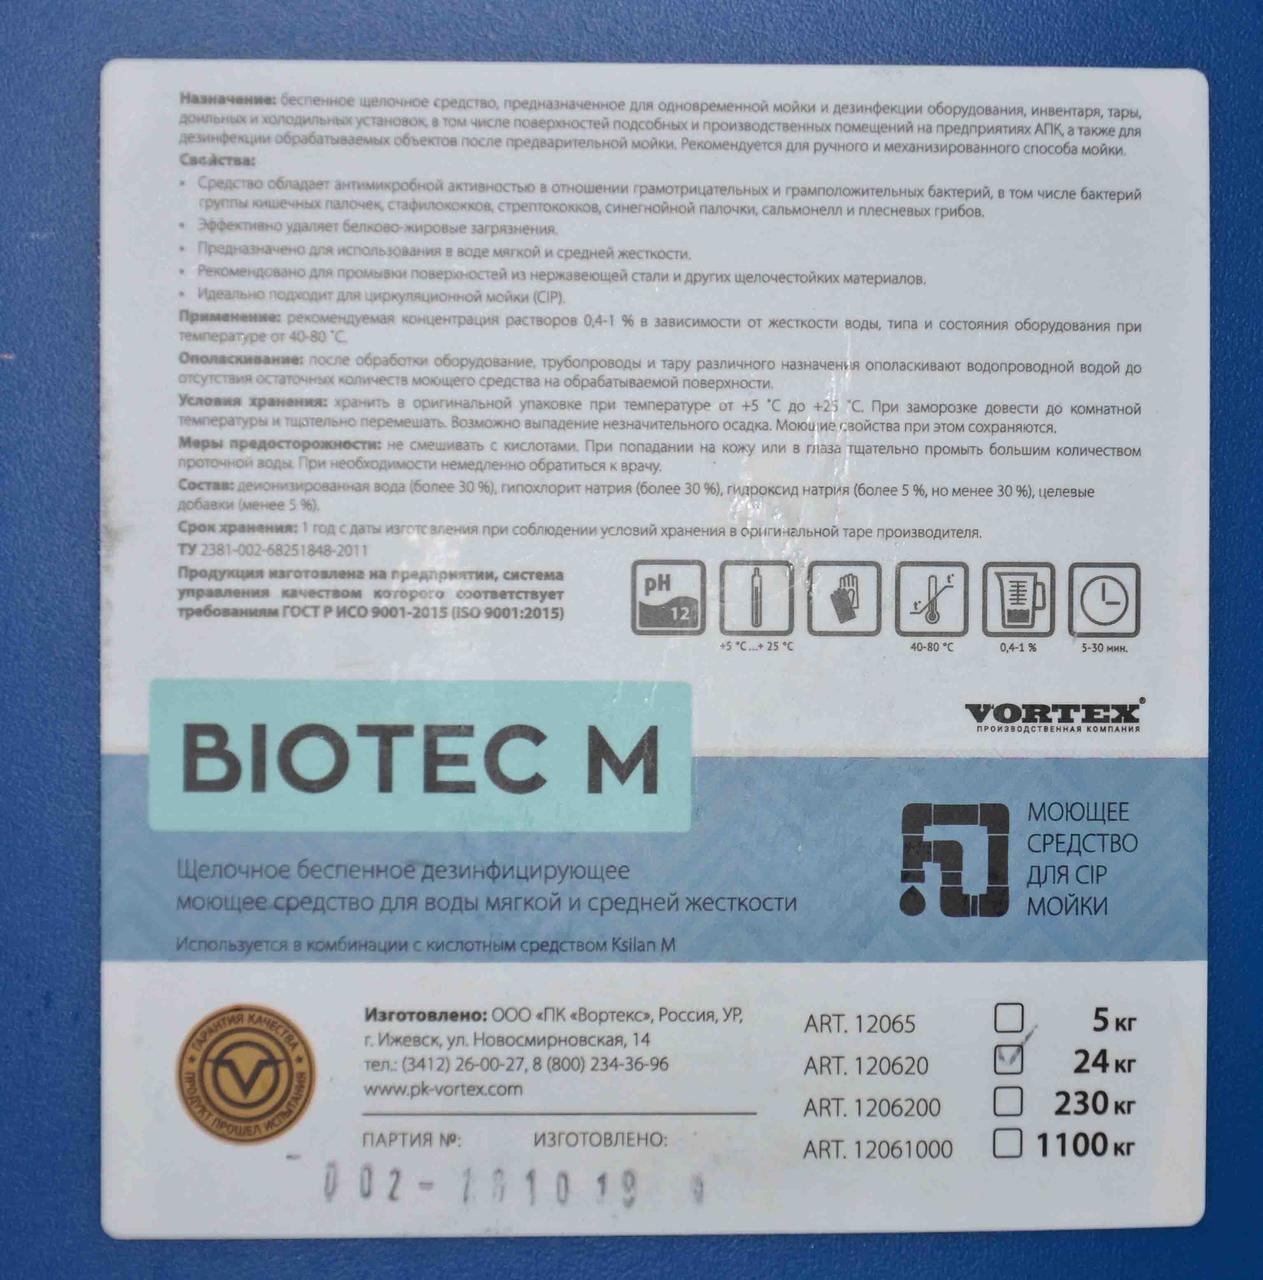 Щелочное беспенное дезинфицирующее средство для мягкой воды Vortex BIOTEC M (Биотек М) 24 кг